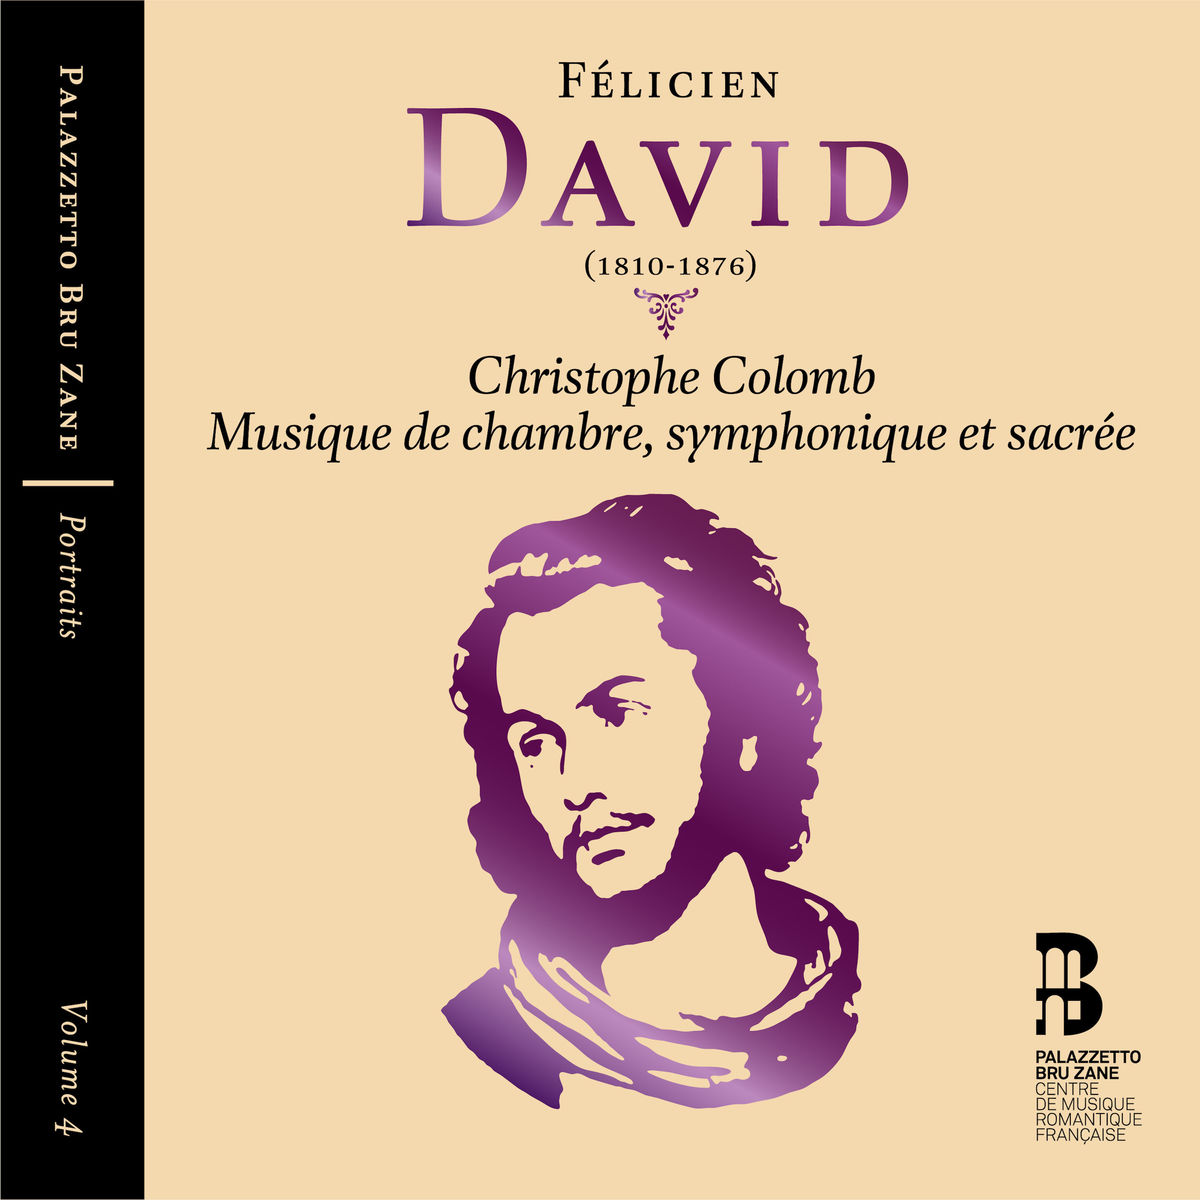 Flemish Radio Choir, Brussels Philharmonic, Herve Niquet, Les Siecles & Francois-Xavier Roth - Felicien David (2017) [Qobuz FLAC 24bit/48kHz]